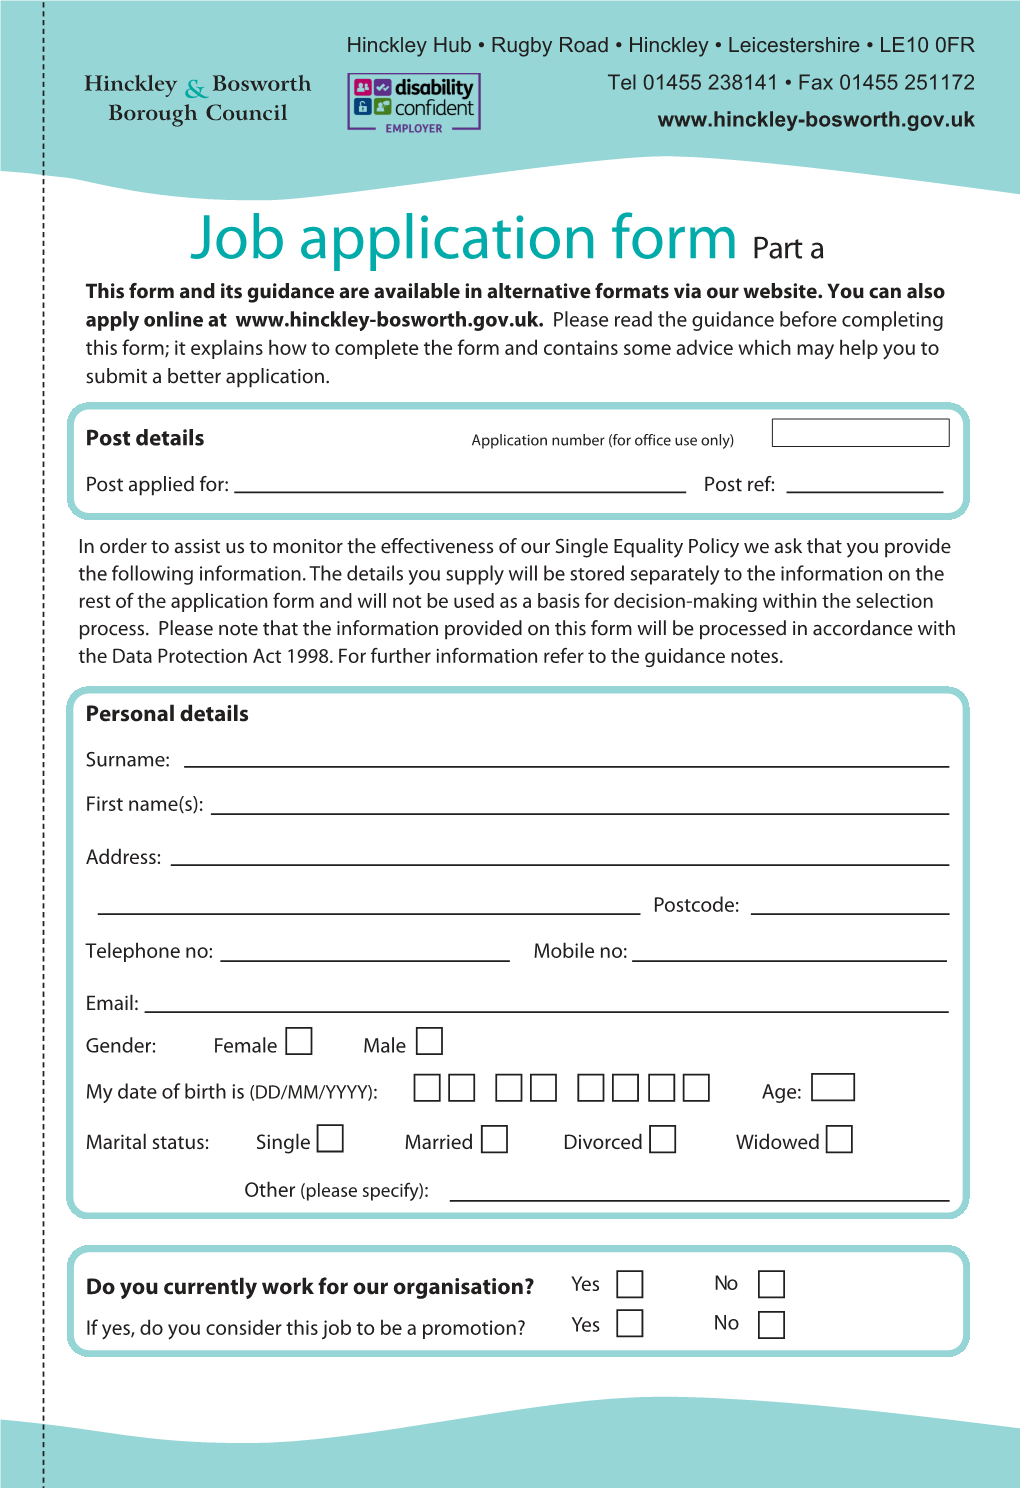 Hinckley & Bosworth Borough Council Job Application Form